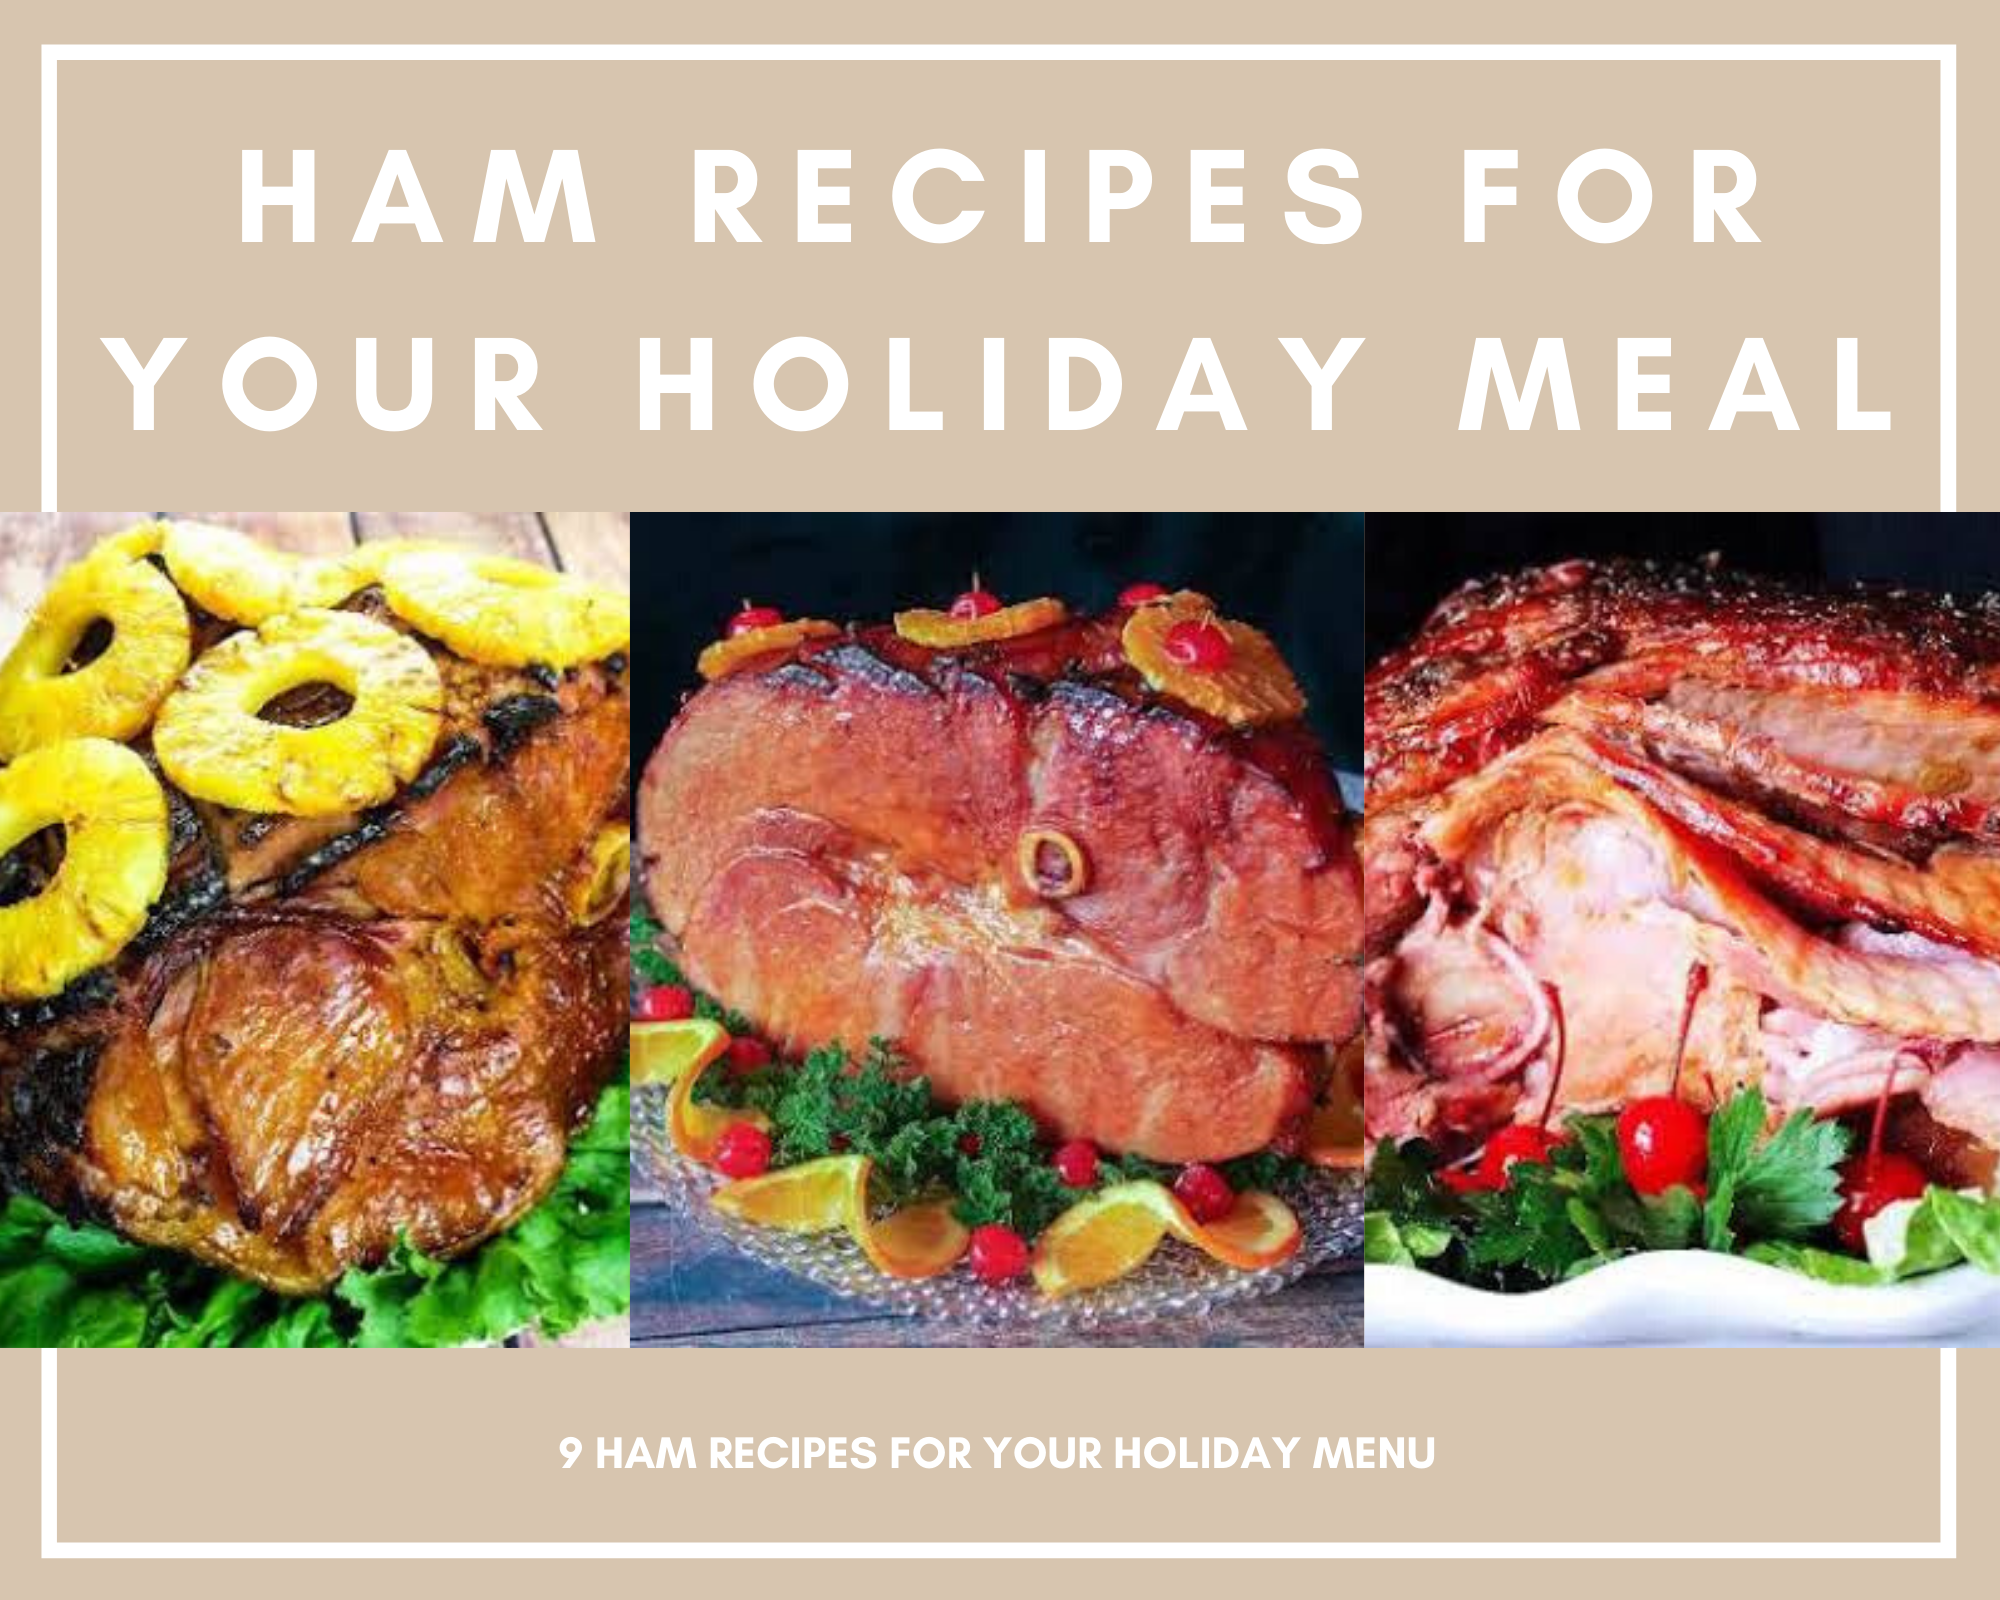 holiday ham recipes